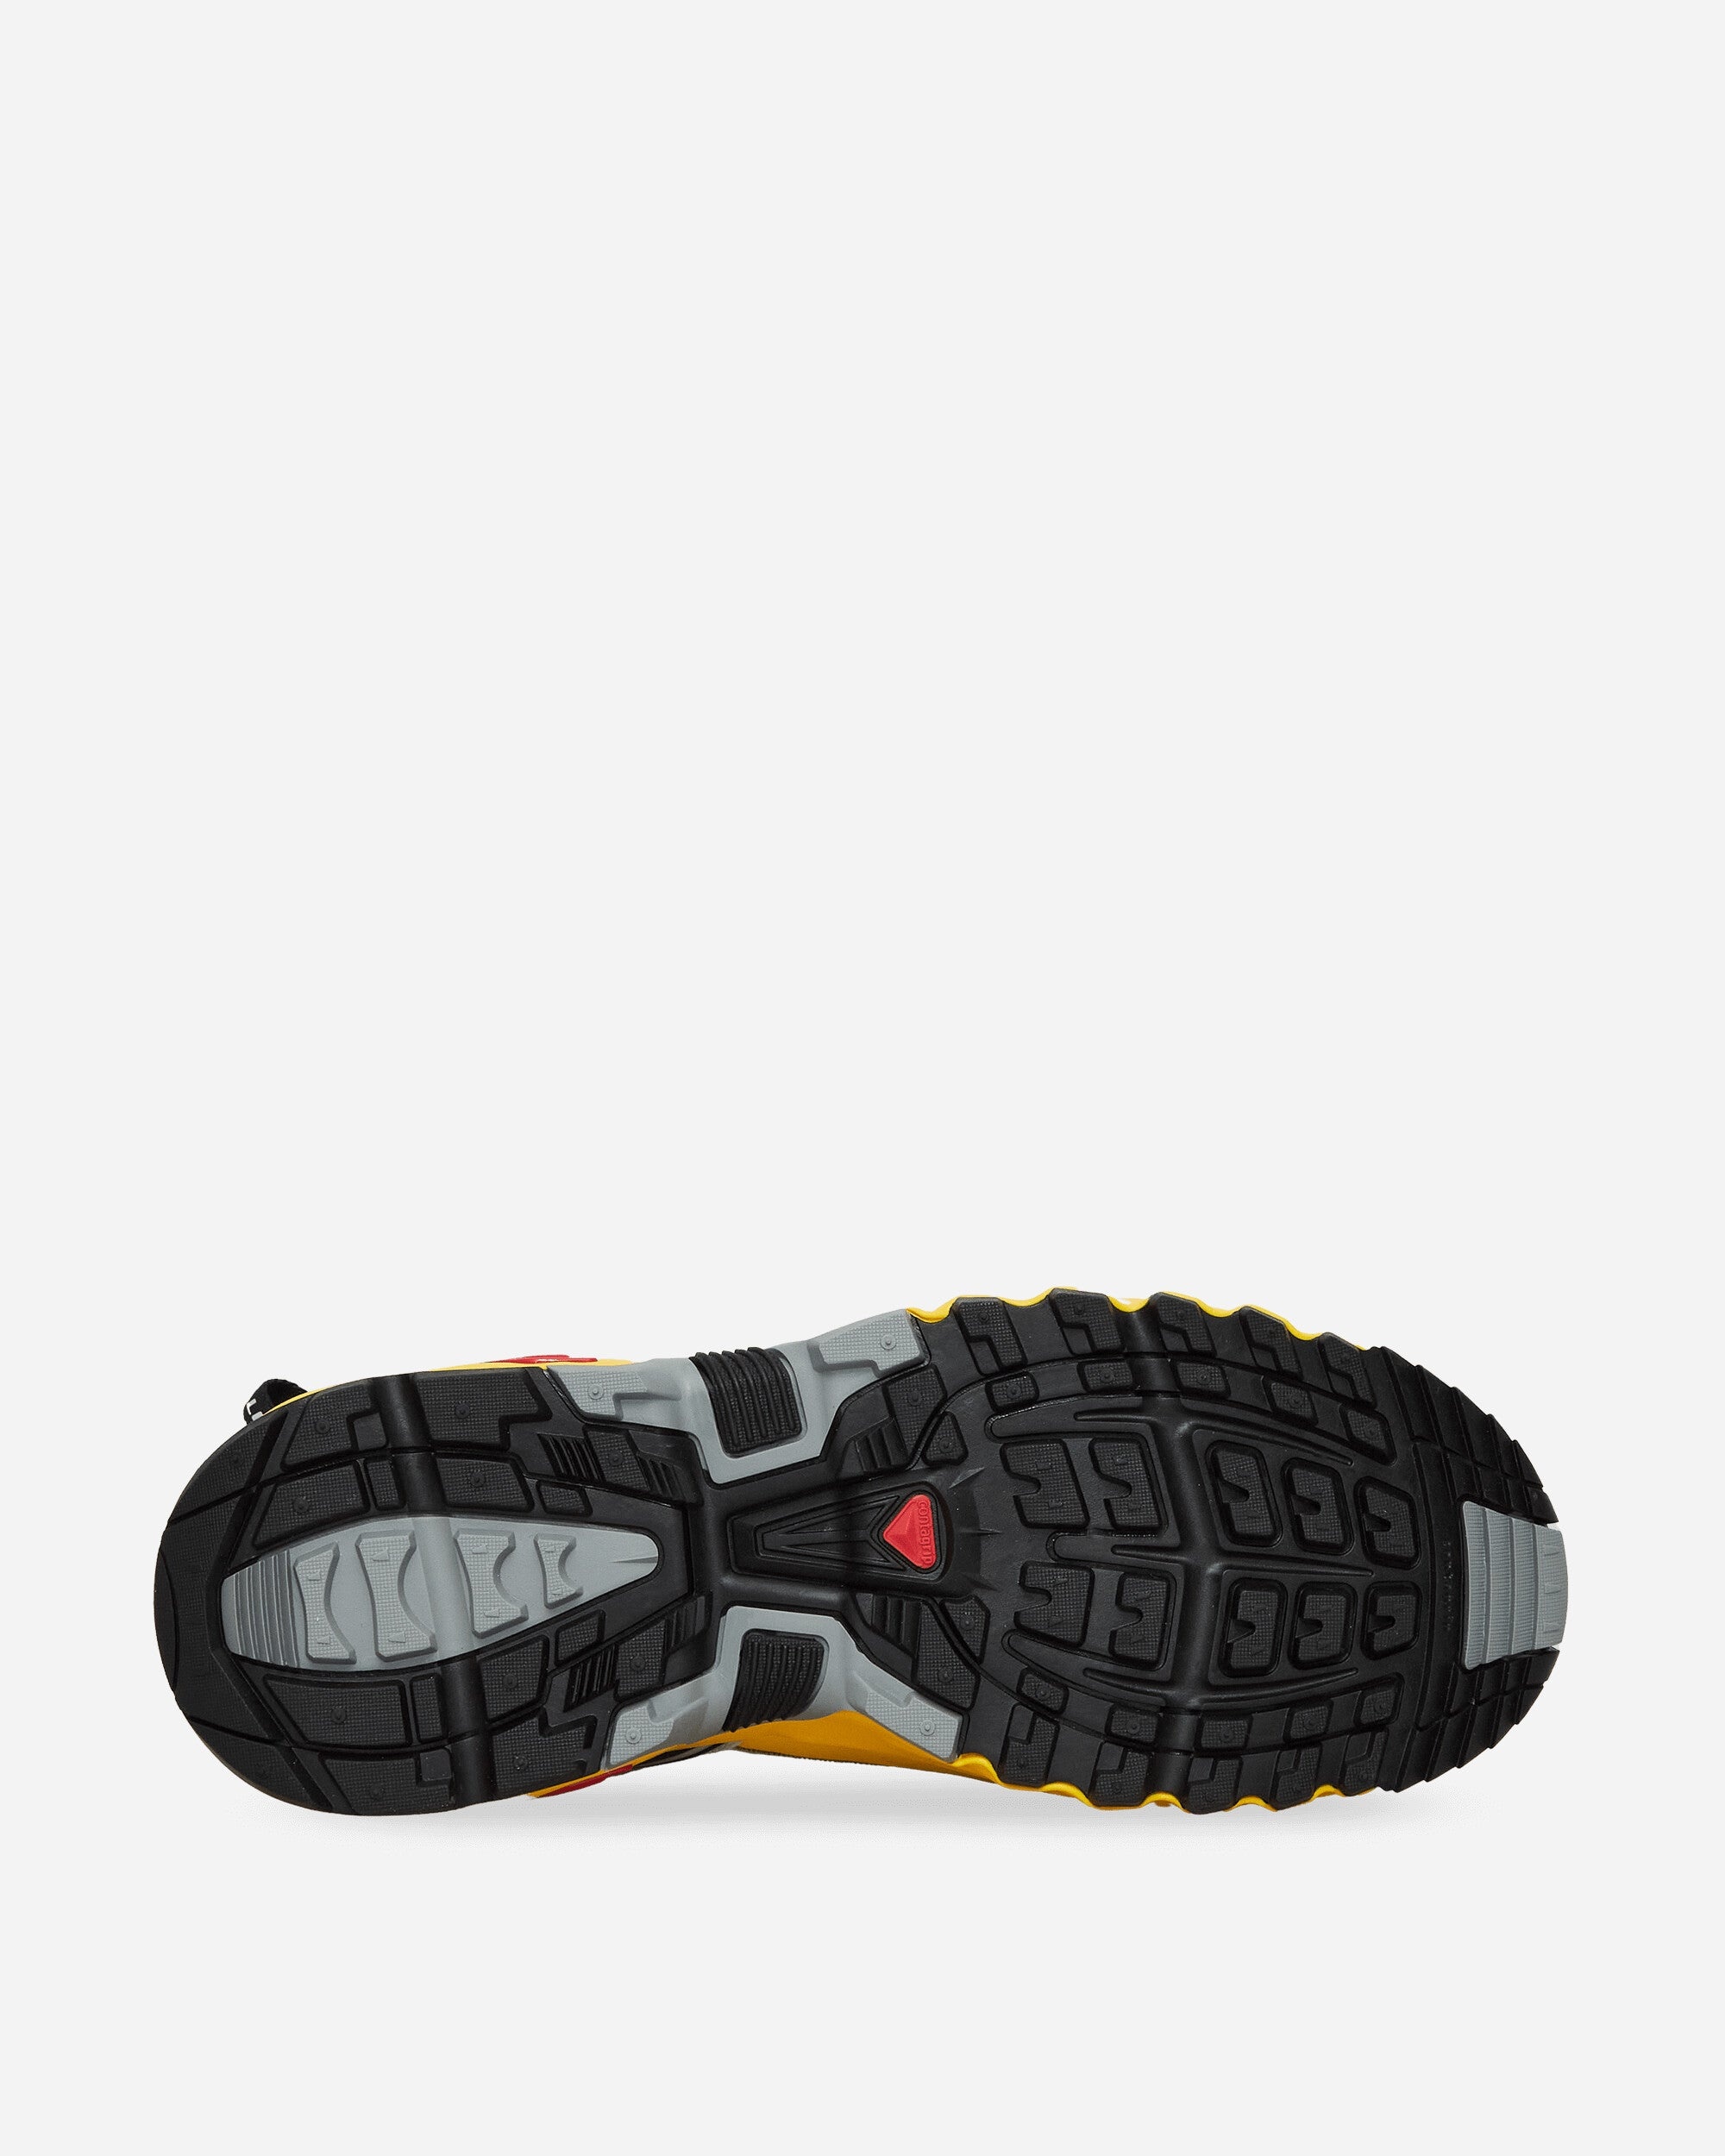 ACS Pro Sneakers Black / Lemon / High Risk Red - 5